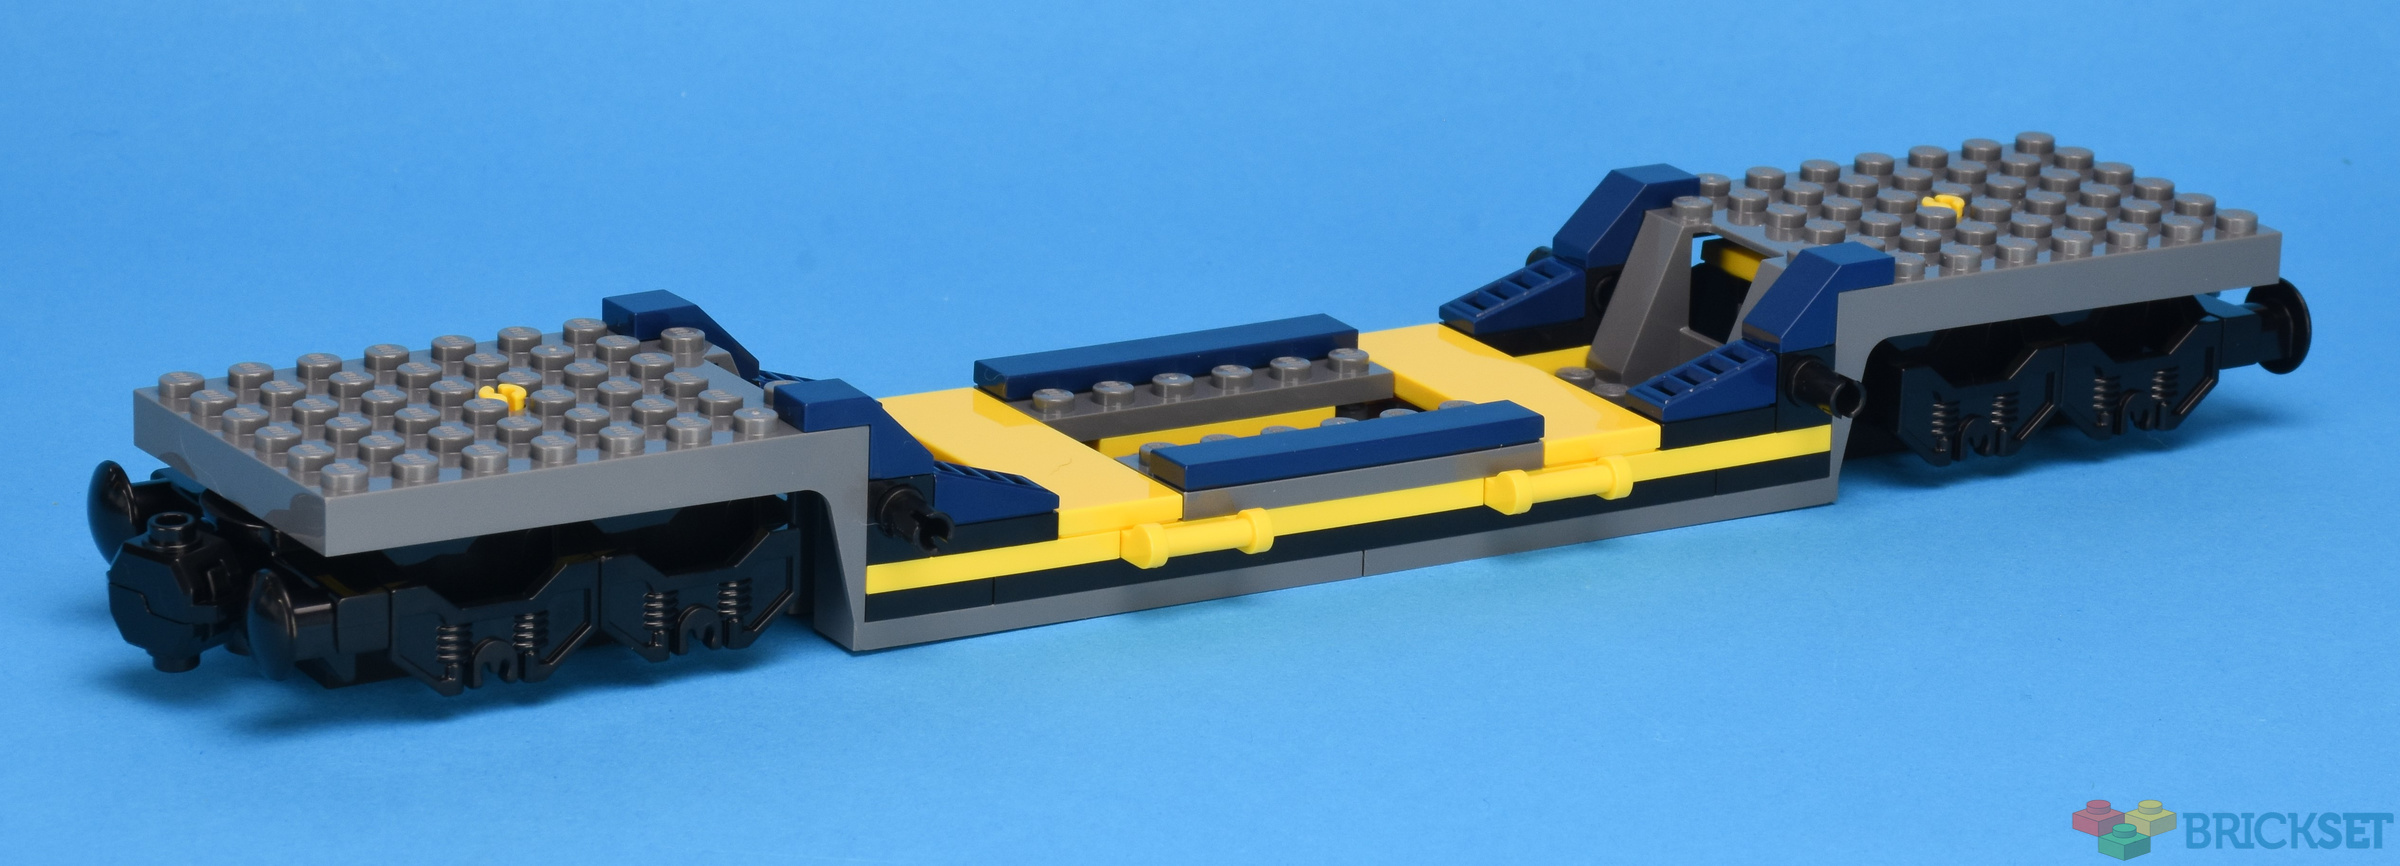 R Portal Rund LEGO 60336 Freight Train review | Brickset